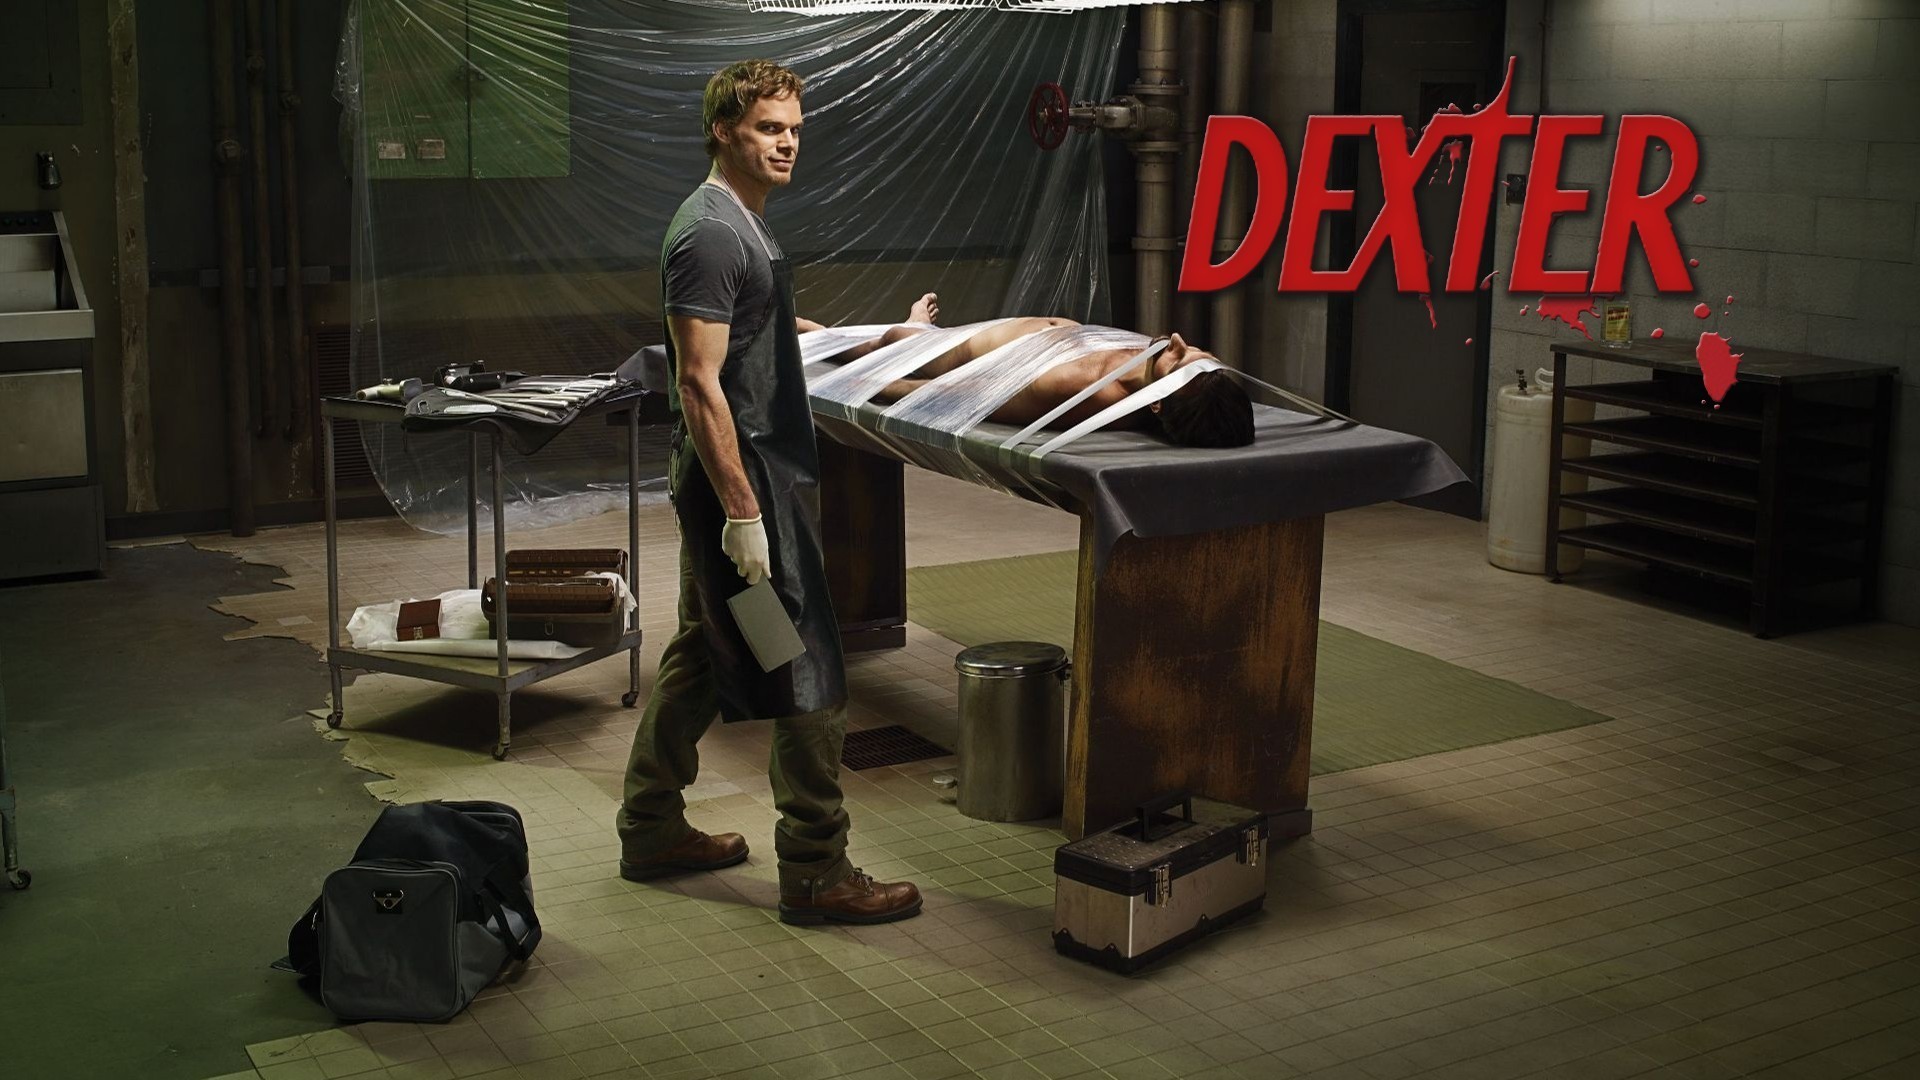 1920x1080 TV Show - Dexter Michael C. Hall Dexter (TV Show) Dexter Morgan Wallpaper